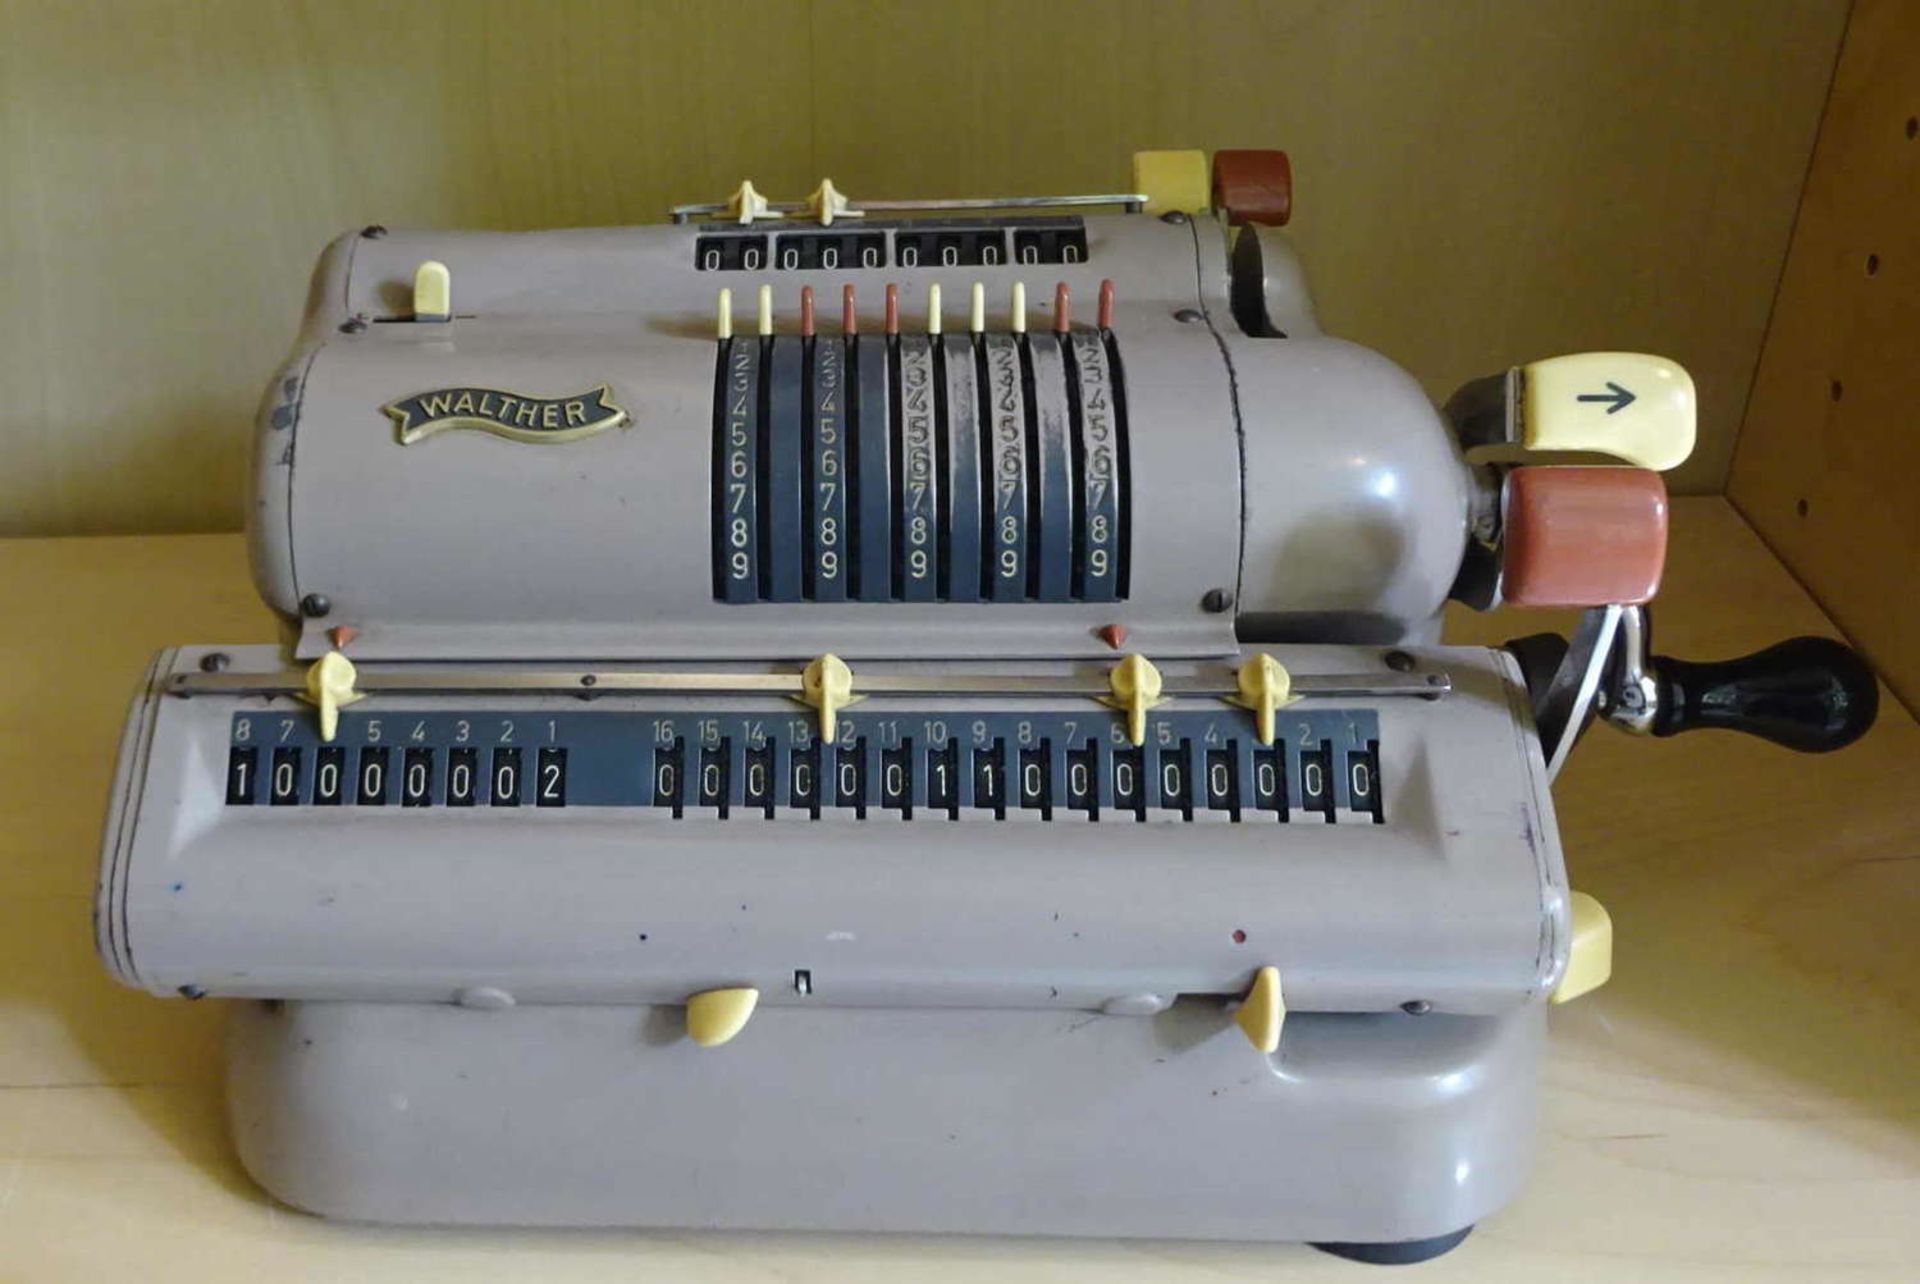 alte Rechenmaschine um 1960, Walther Büromaschinen, Mod. Nr. WSR 160 old calculating machine